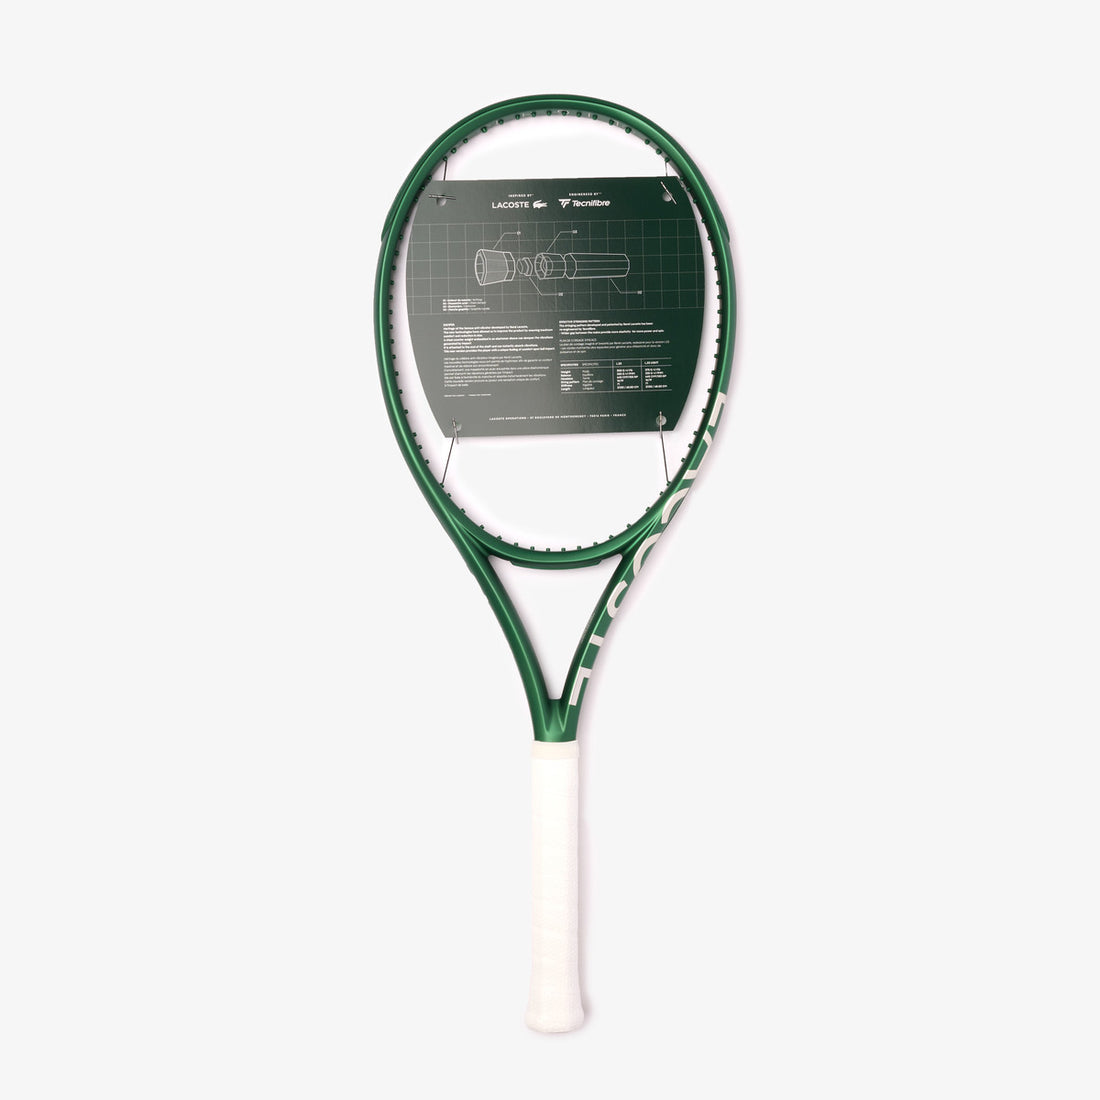 Lacoste L23L Tennis Racquet